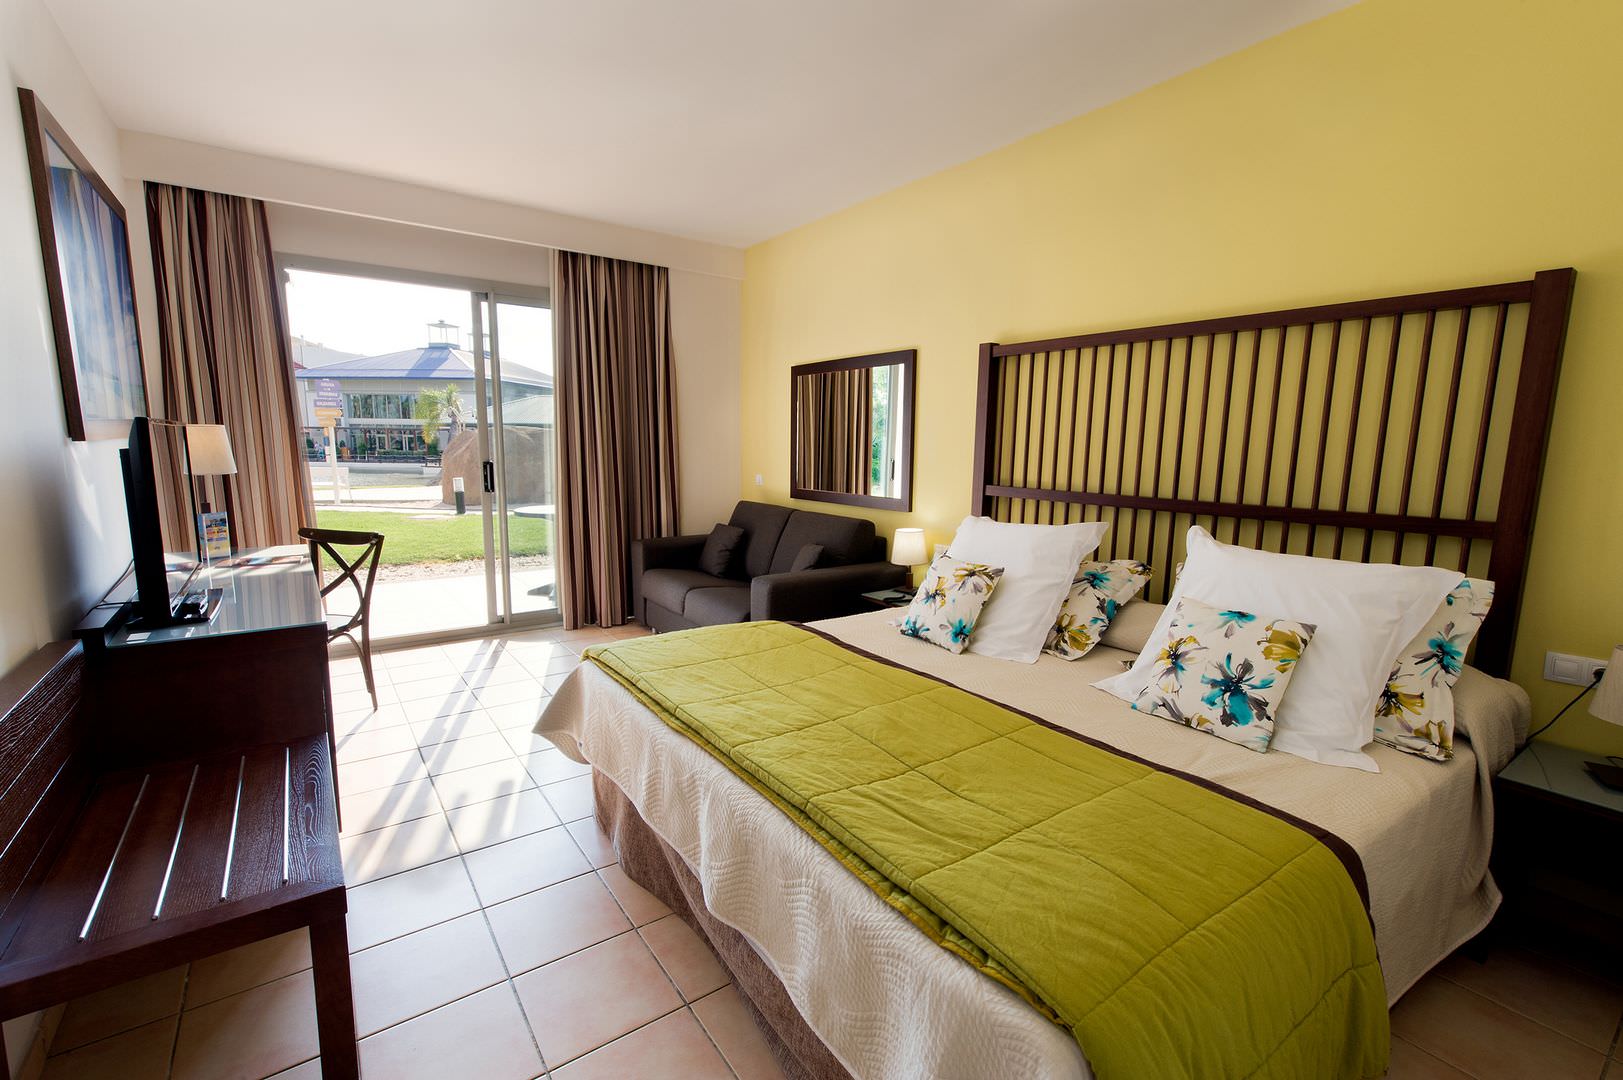 Habitación standard del Hotel Caribe en PortAventura World